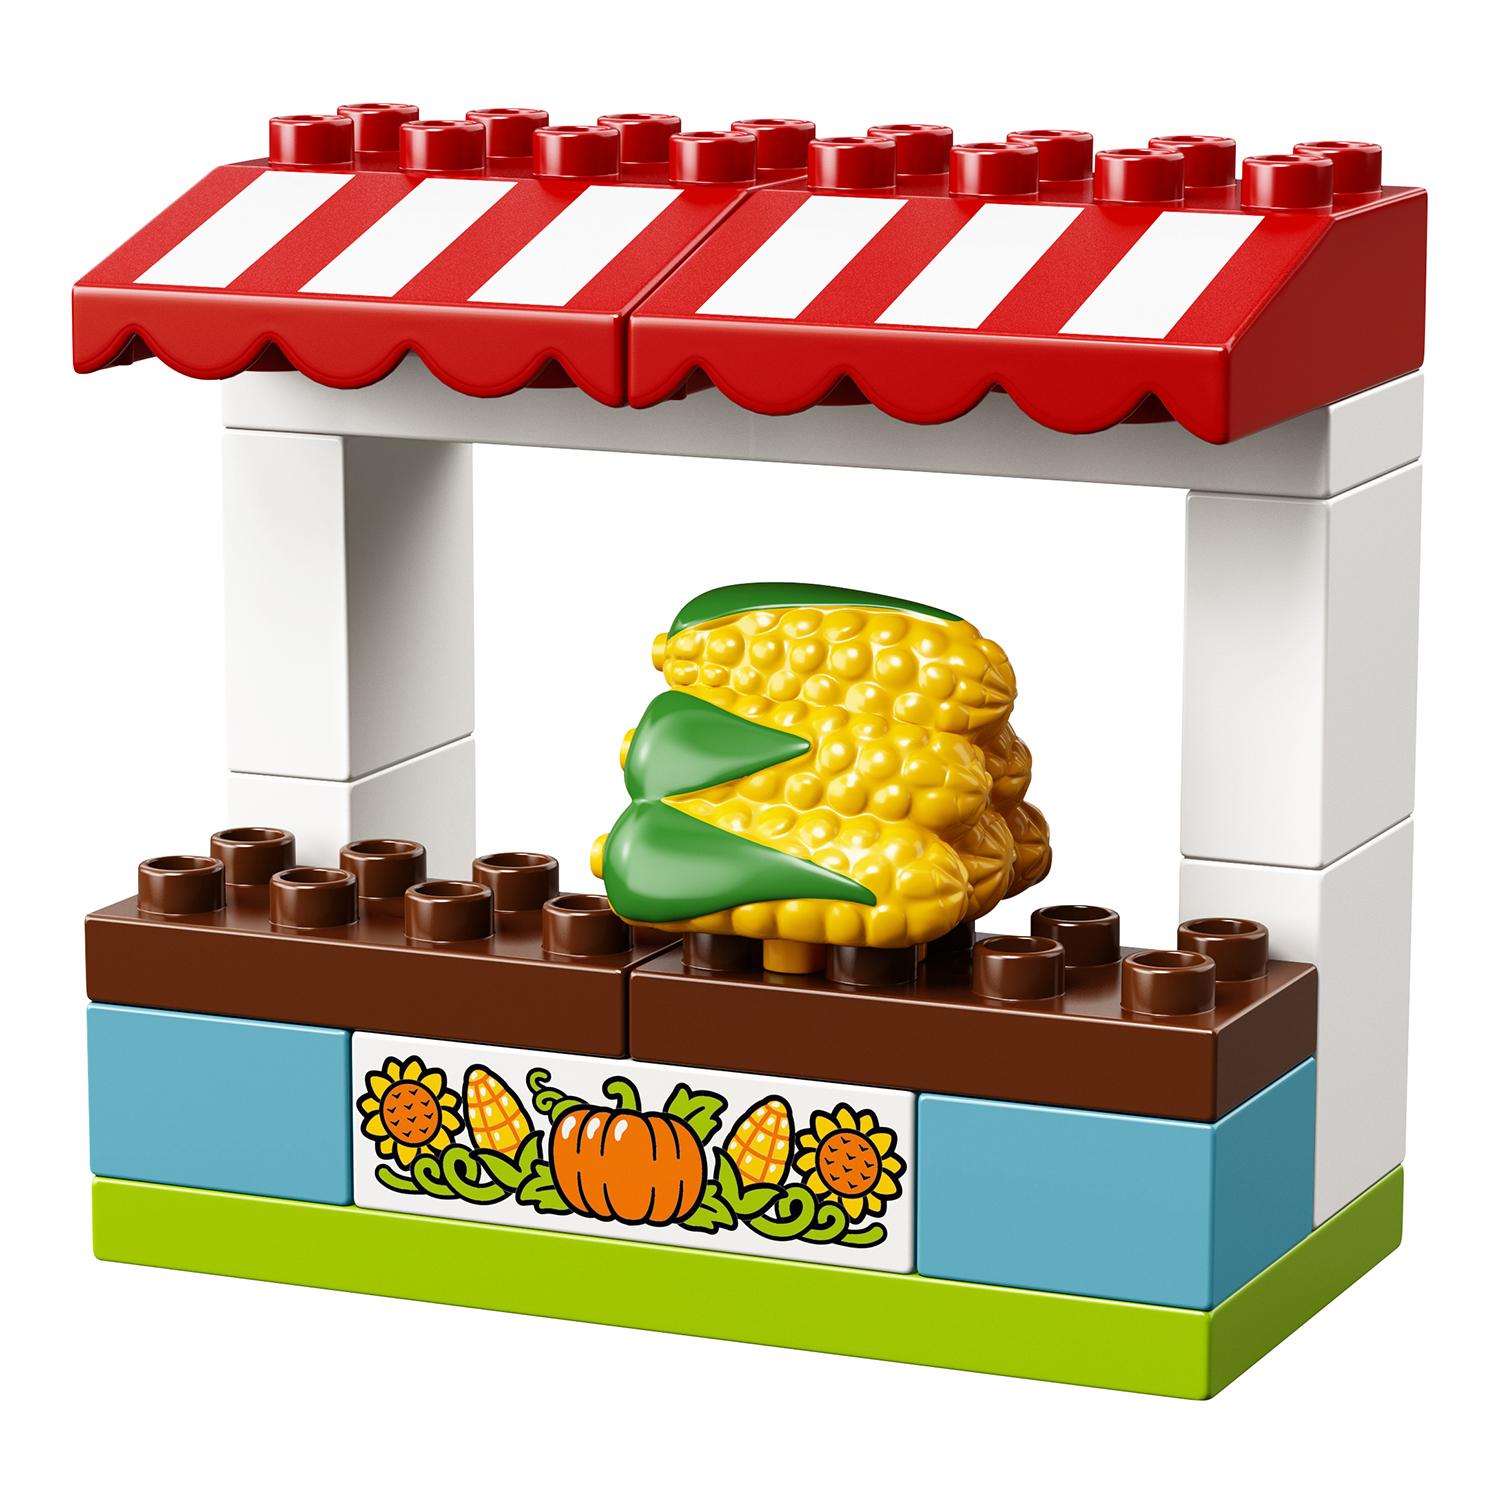 Конструктор из серии Lego Duplo - Фермерский рынок  